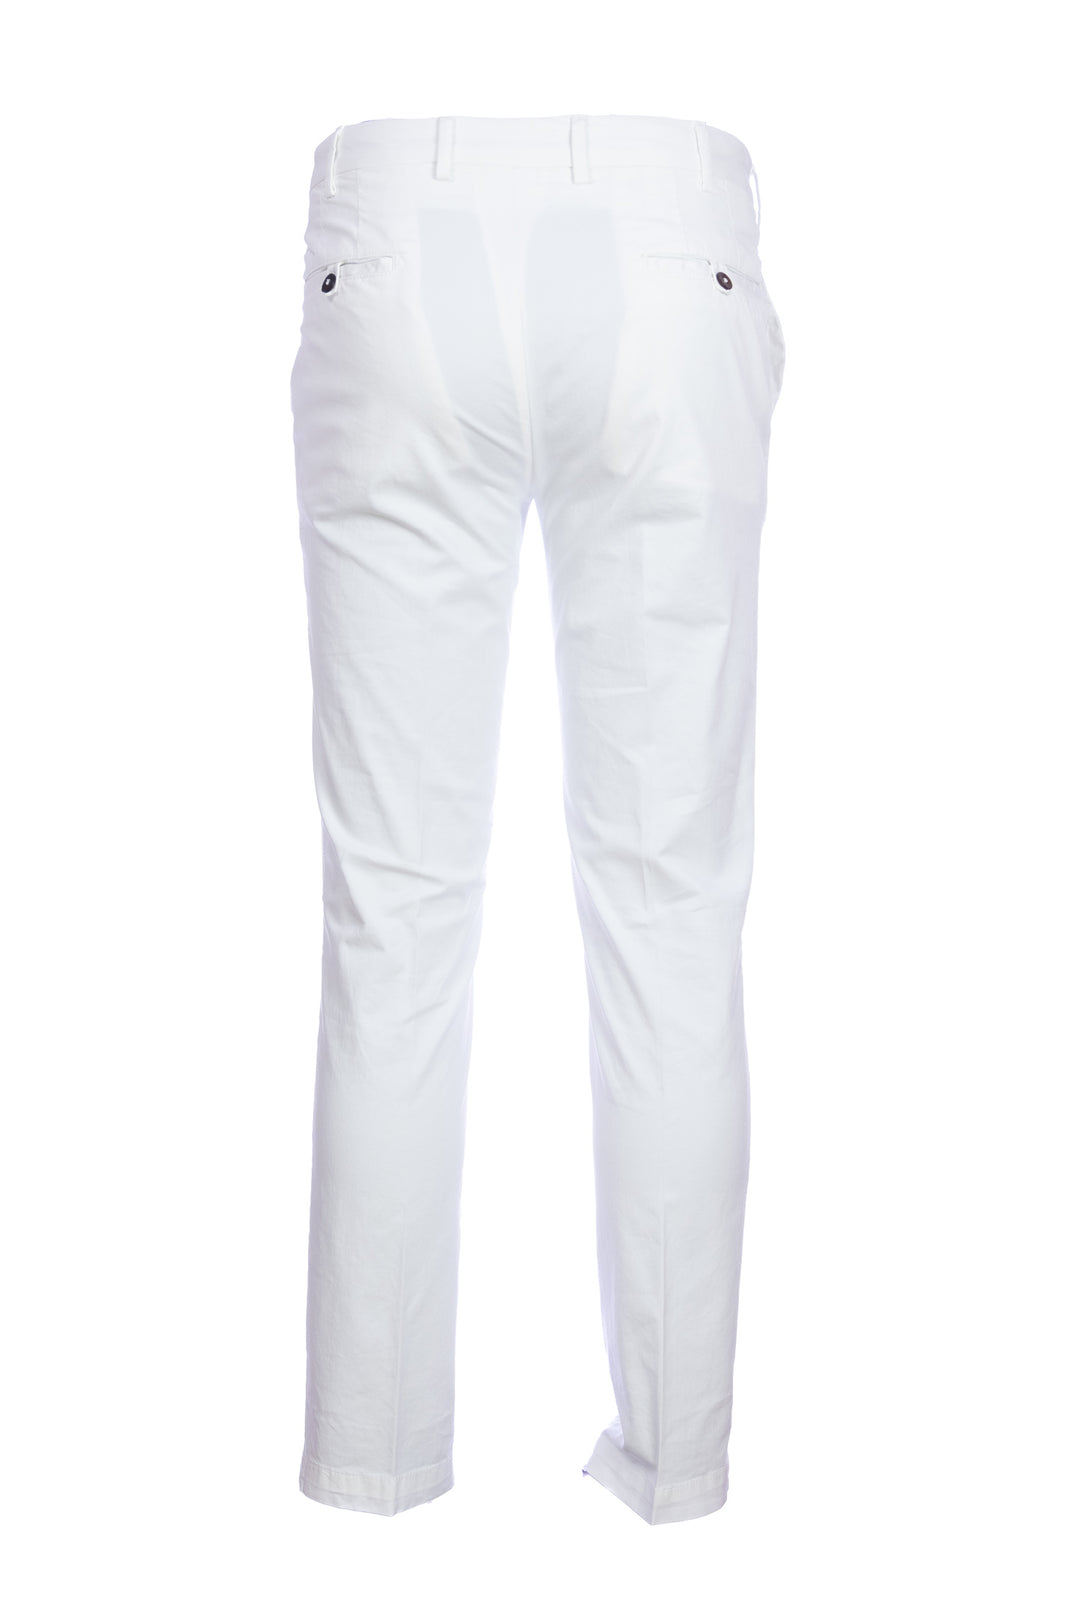 DEVORE Pantalone bianco in cotone stretch con vita elastica e una pence - Mancinelli 1954